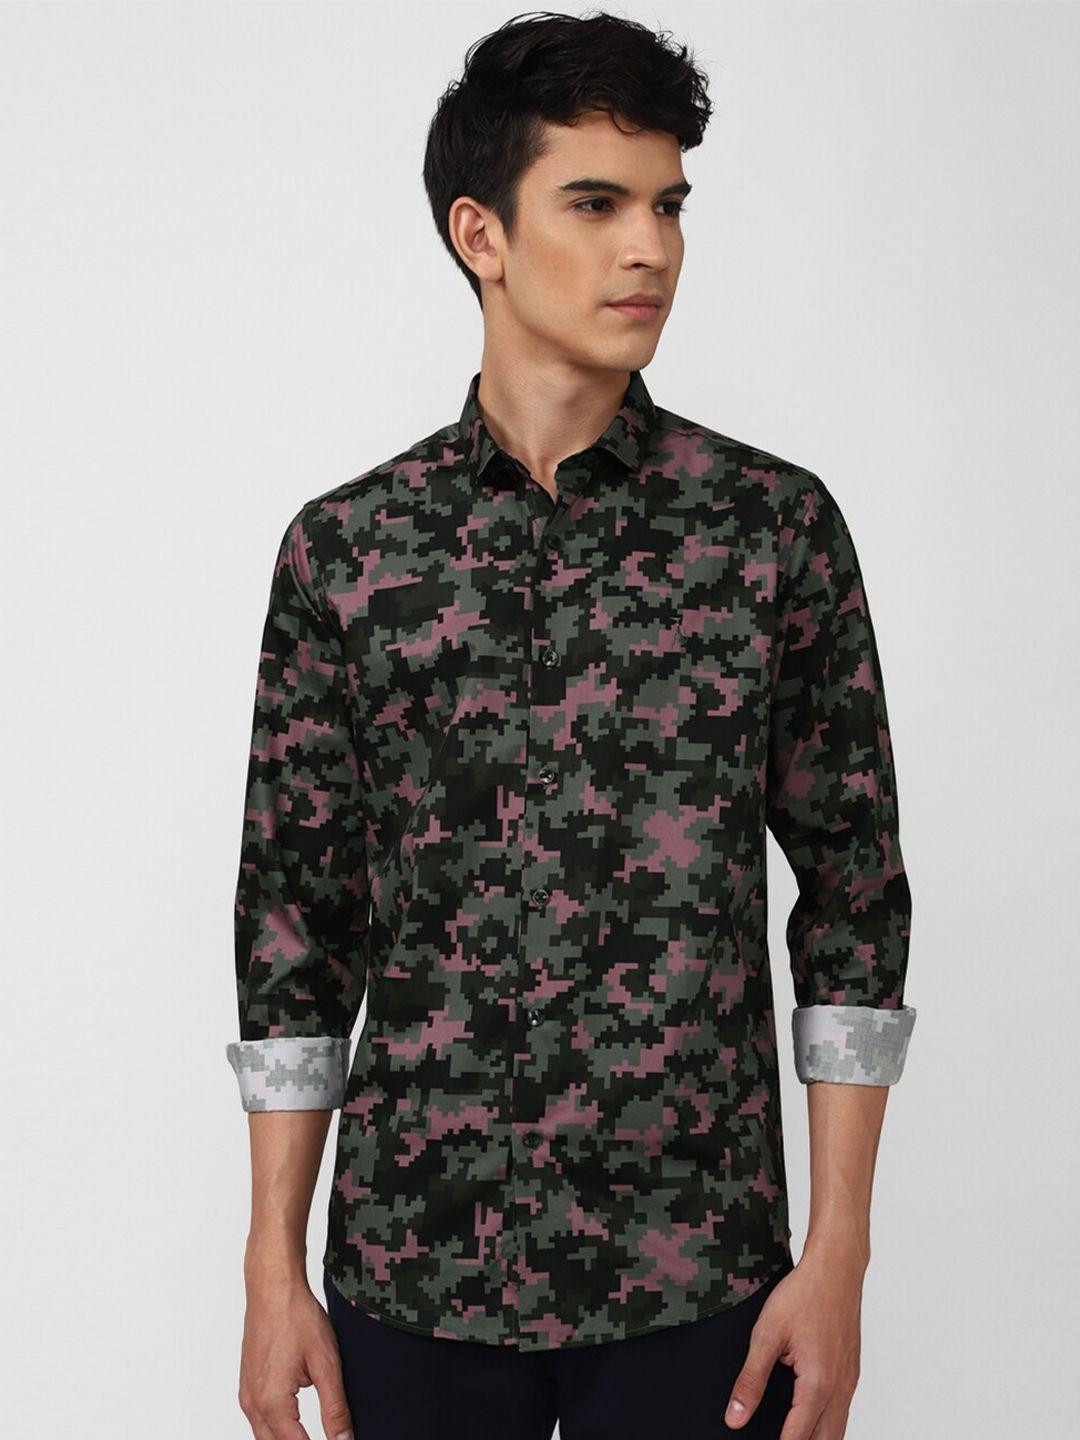 simon-carter-london-men-black-&-green-slim-fit-floral-printed-casual-shirt